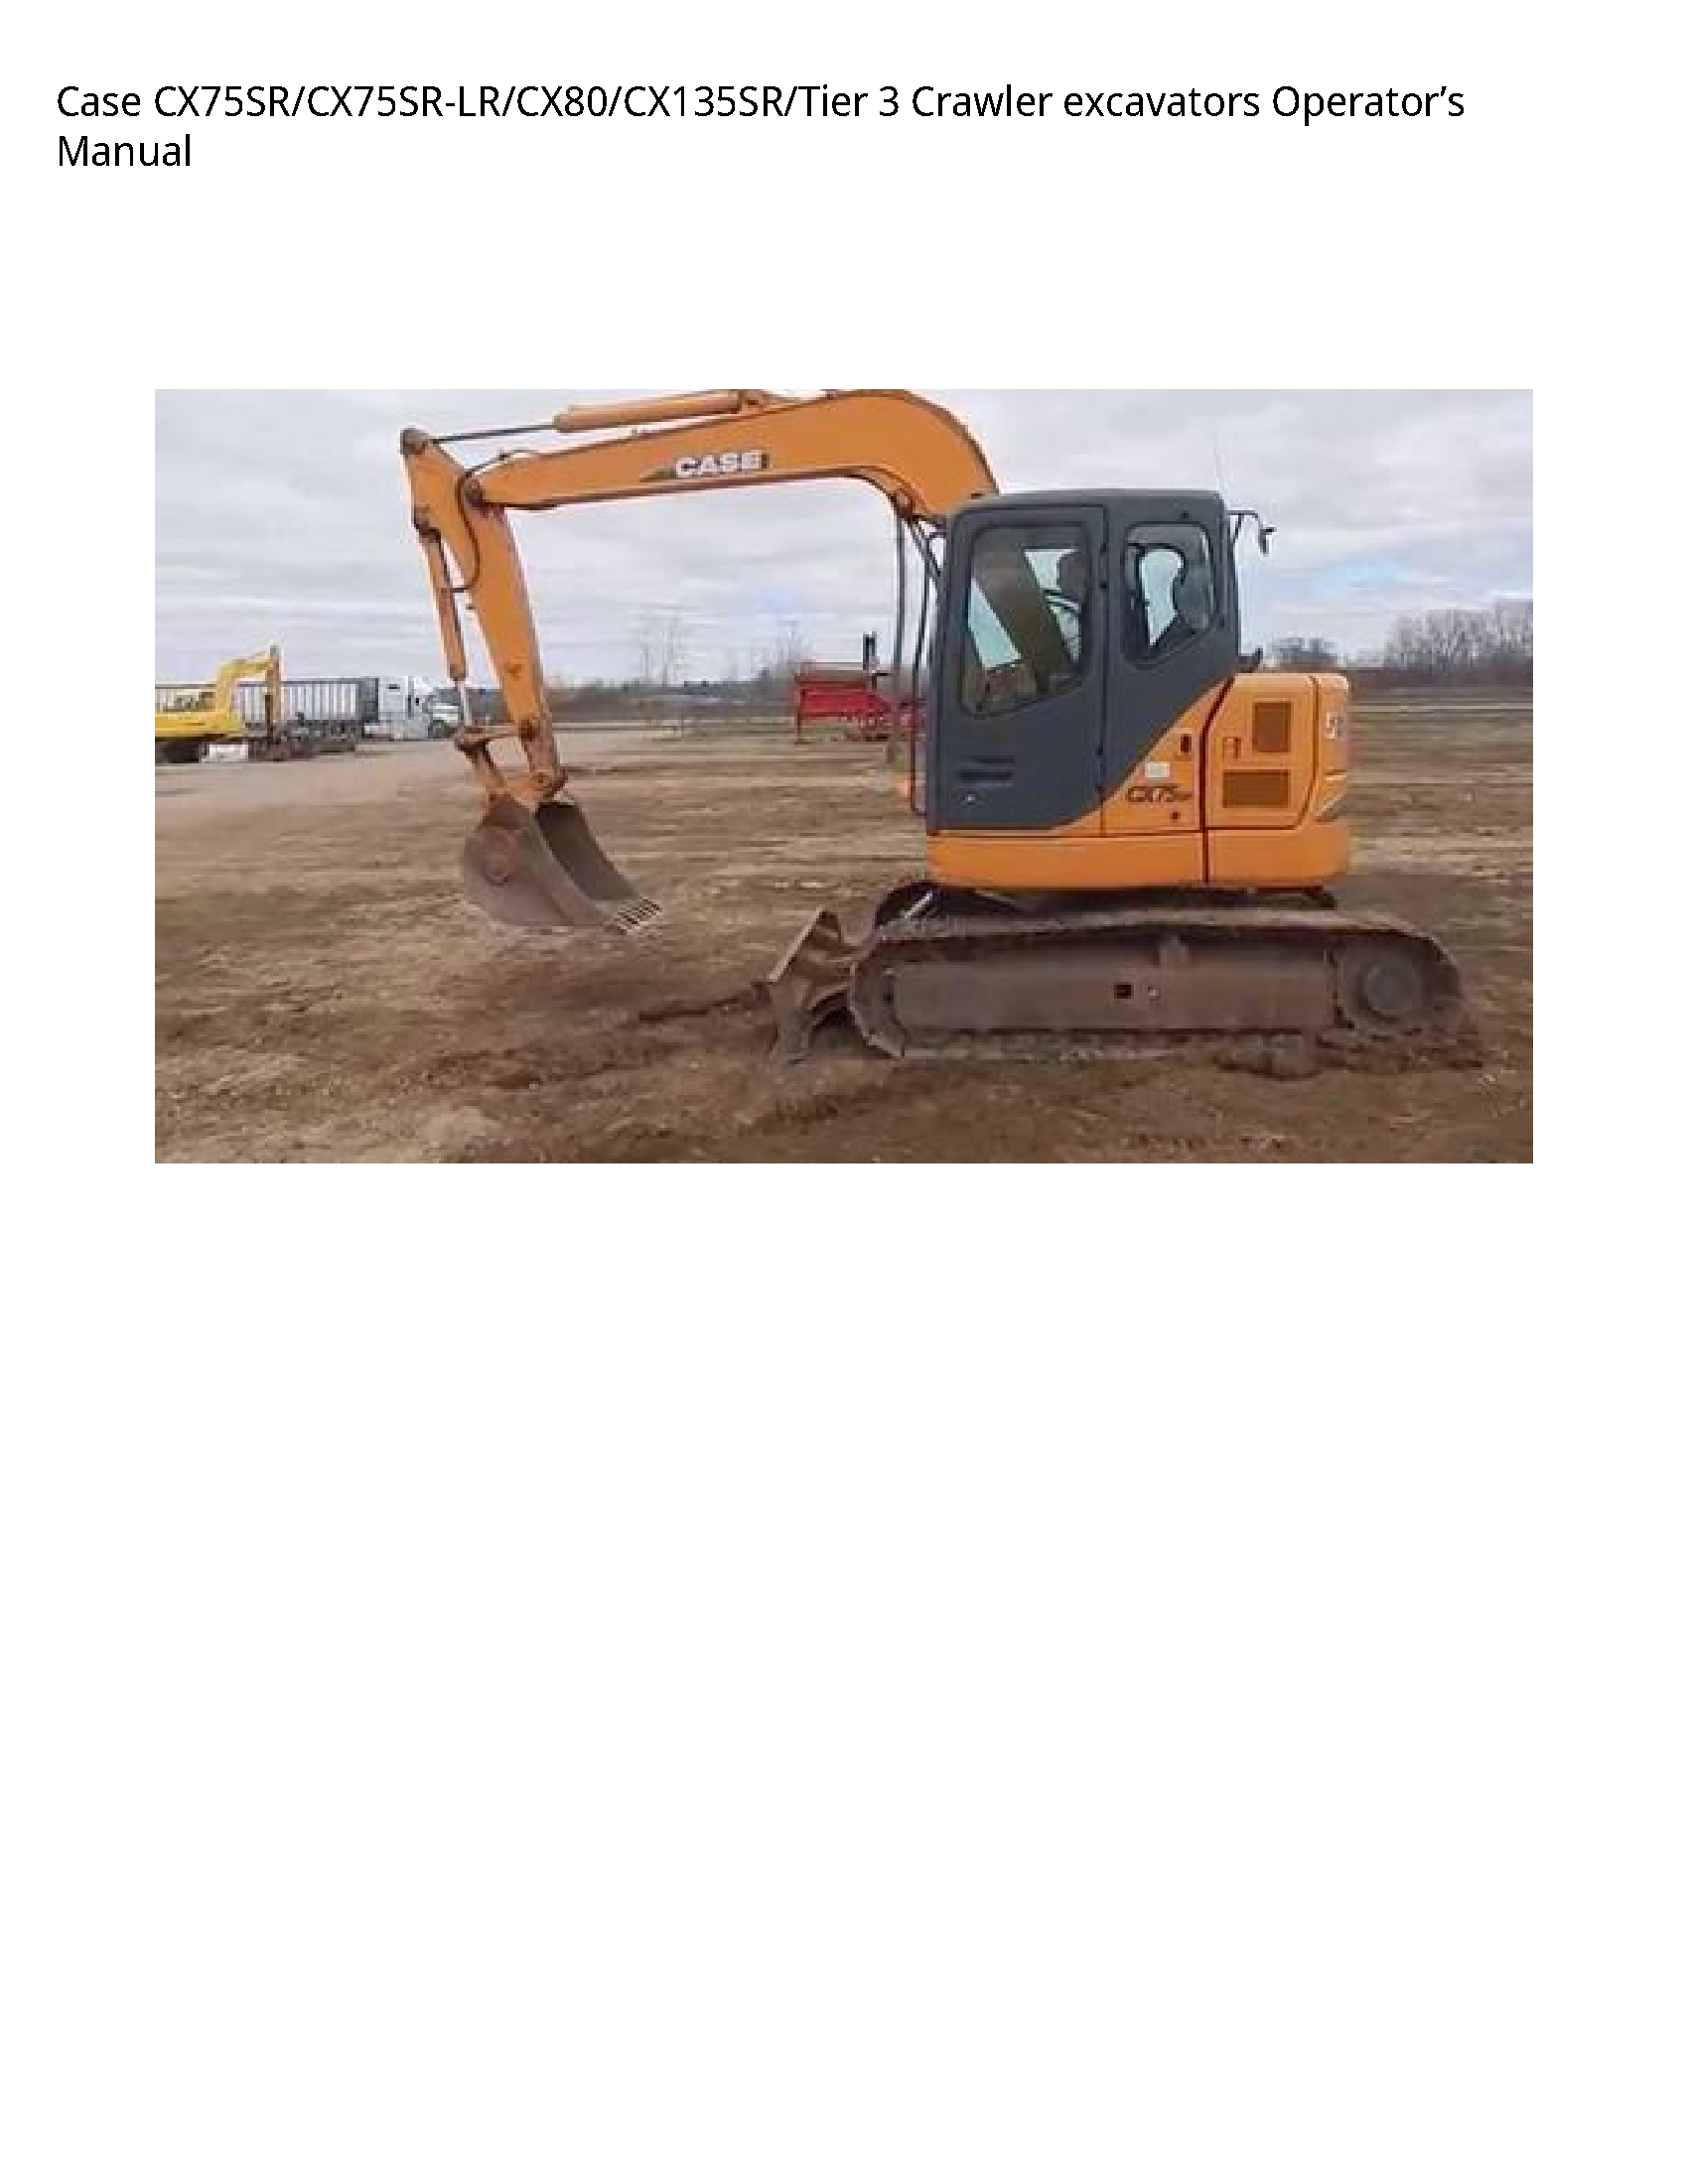 Case/Case IH CX75SR Crawler excavators Operator’s manual